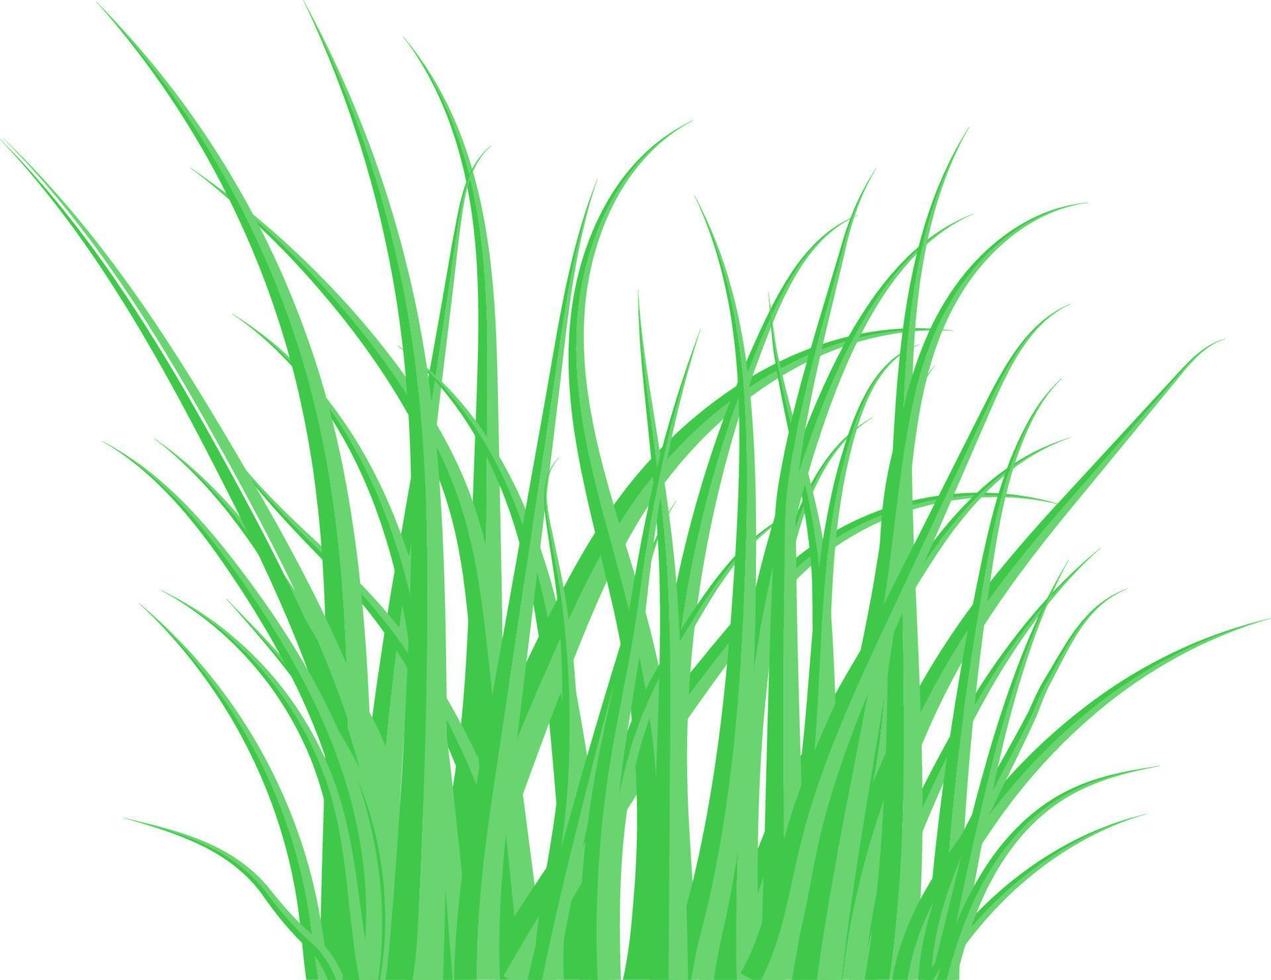 grönt gräs. buskgräset. vektor illustration.